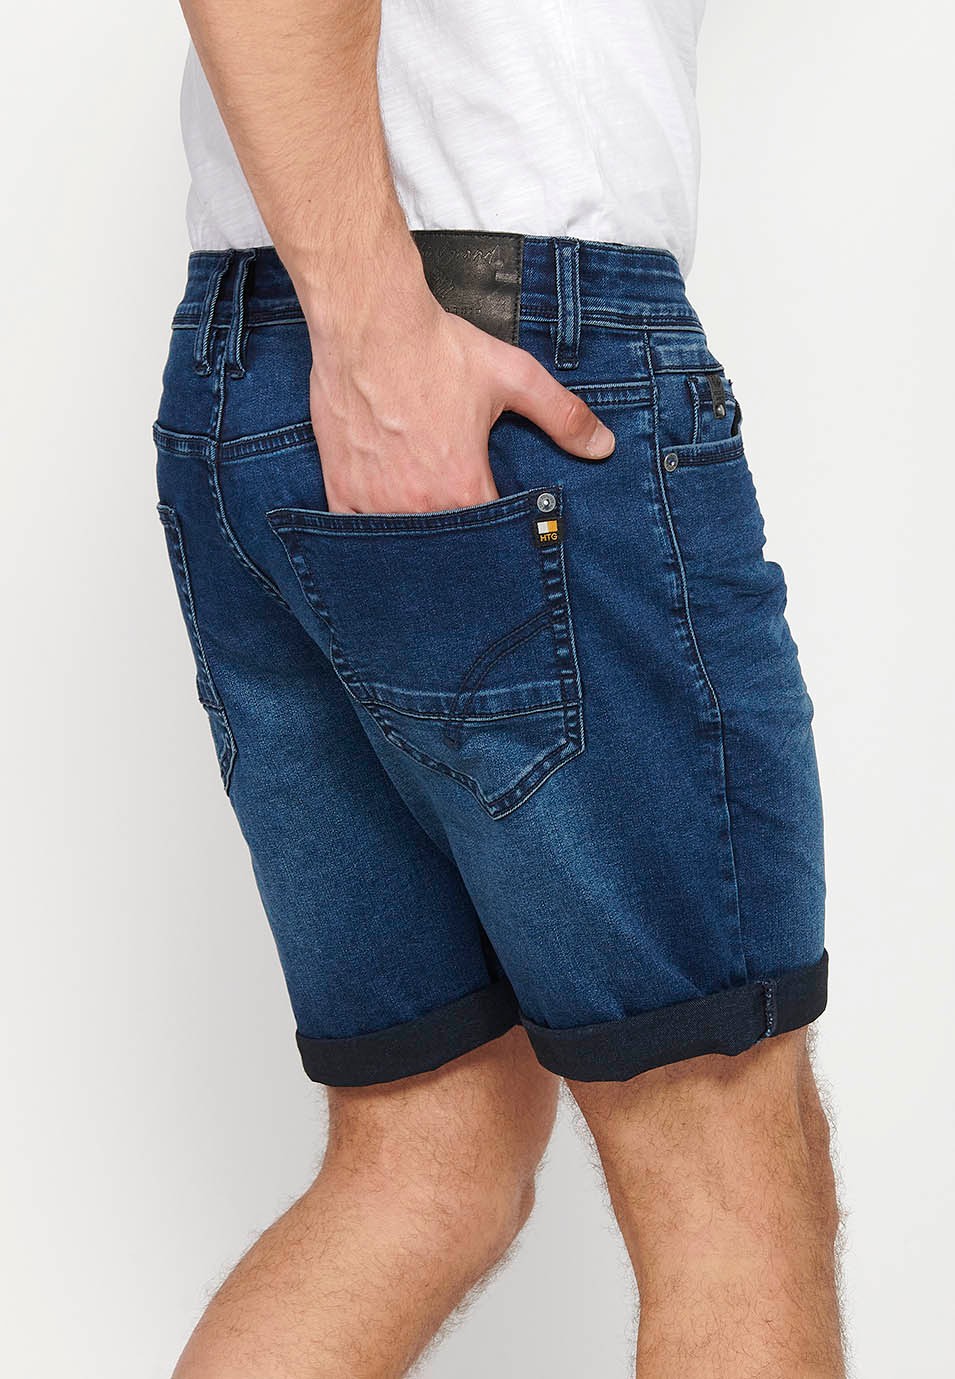 Jeansshorts mit Reißverschluss und Knopfverschluss vorne und fünf Taschen, eine blaue Tasche für Herren